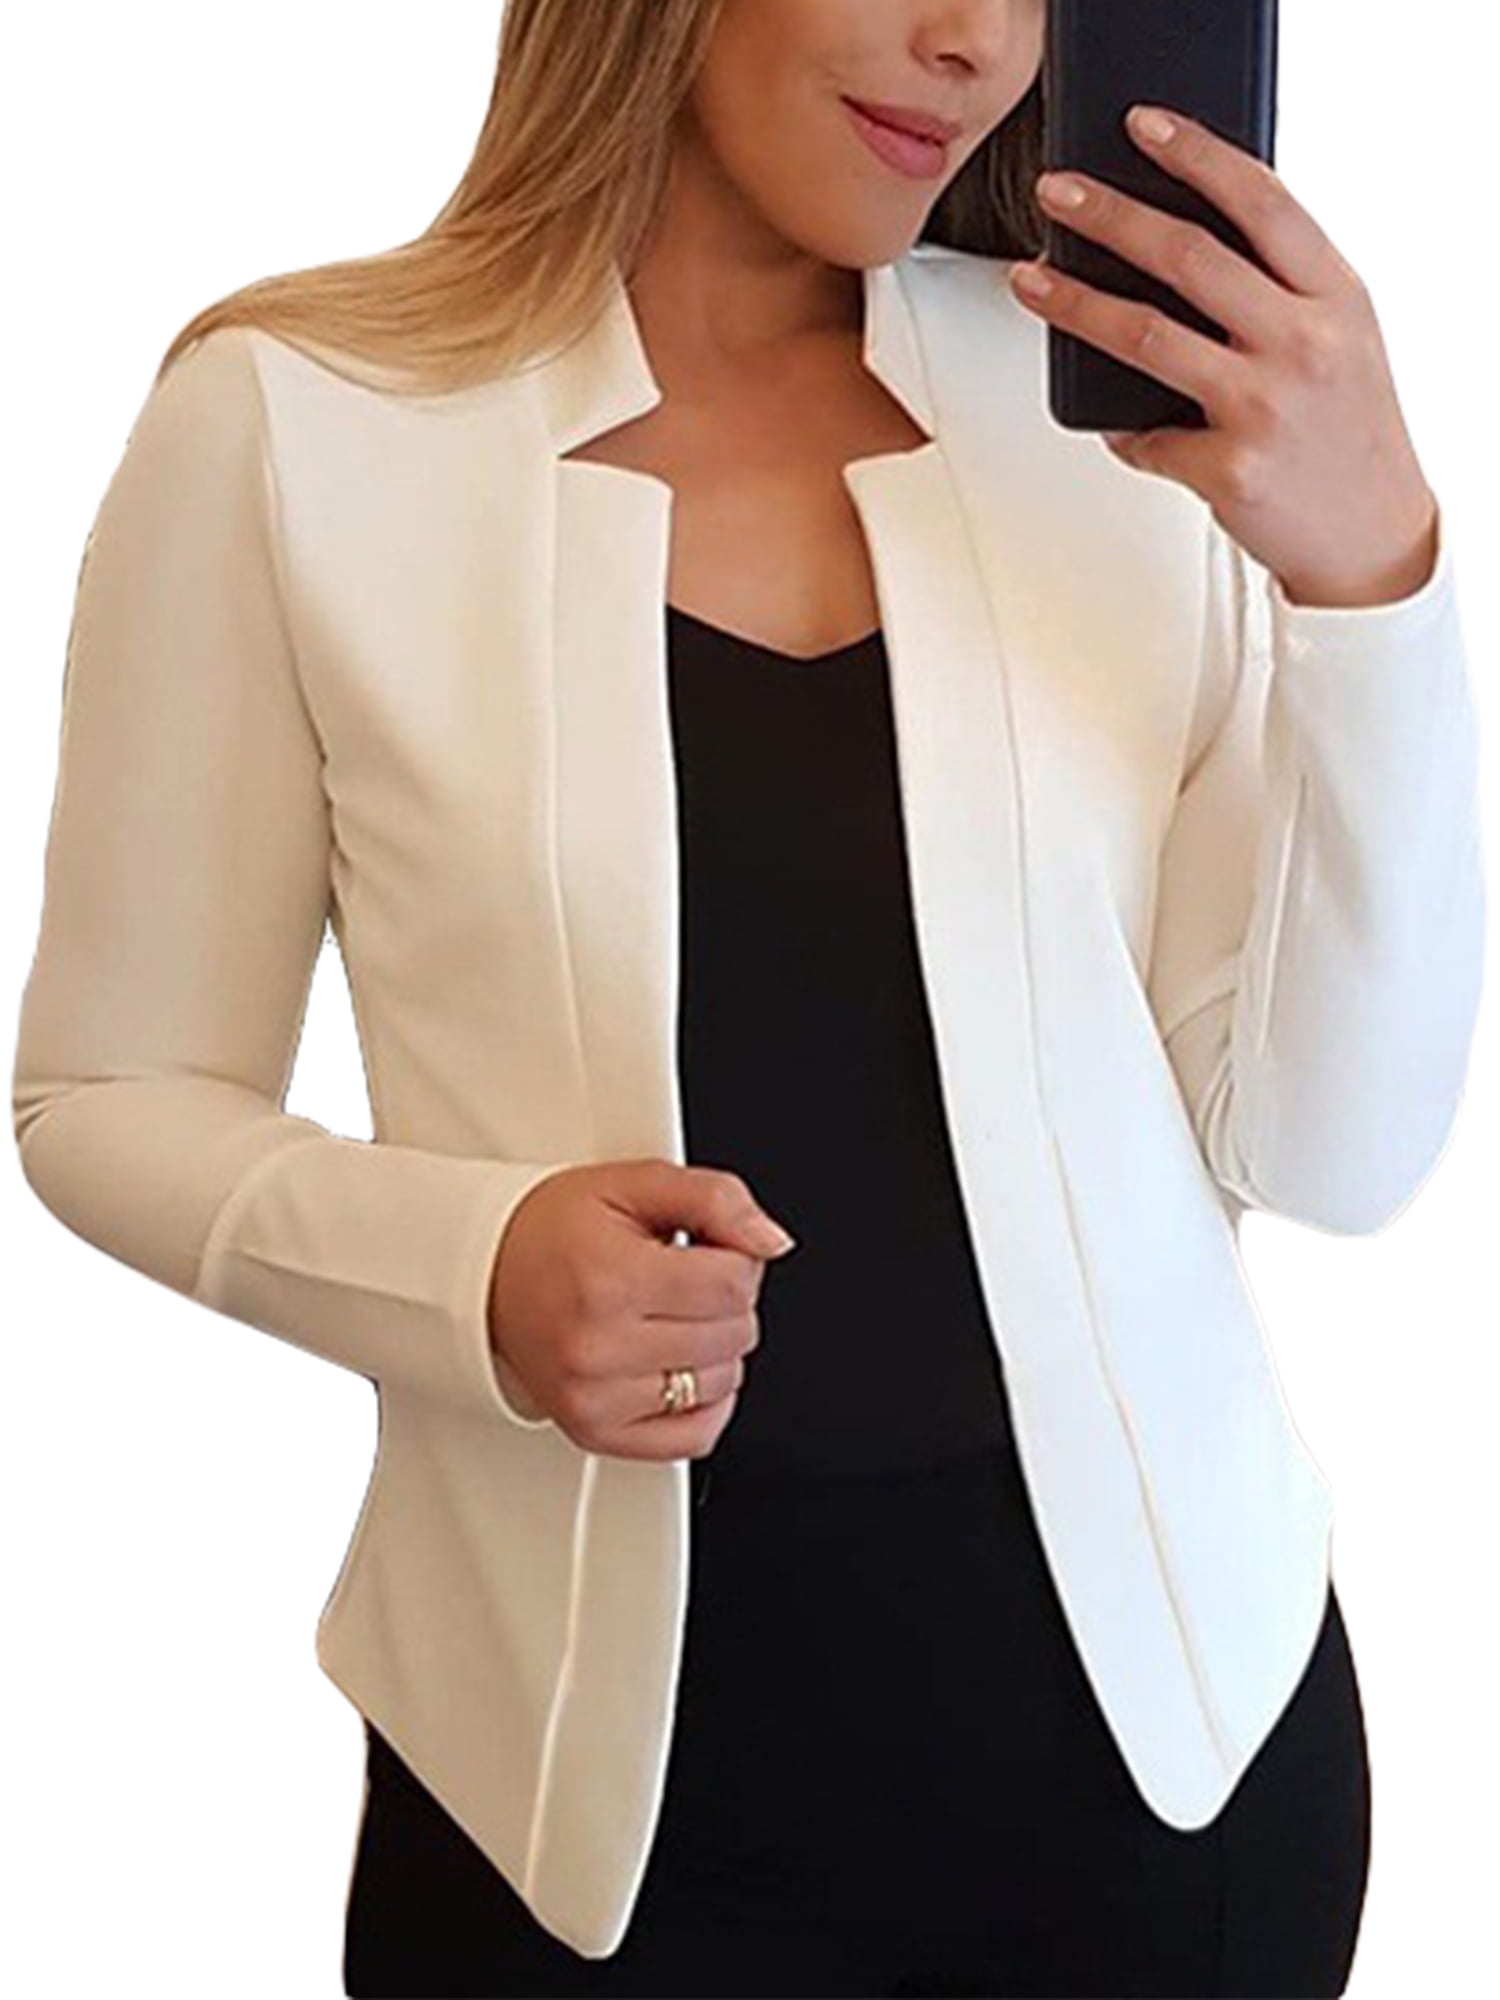 Women's Formal Long Sleeve Lapel Blazer Jacket Office Work Cardigan Outwear 03 